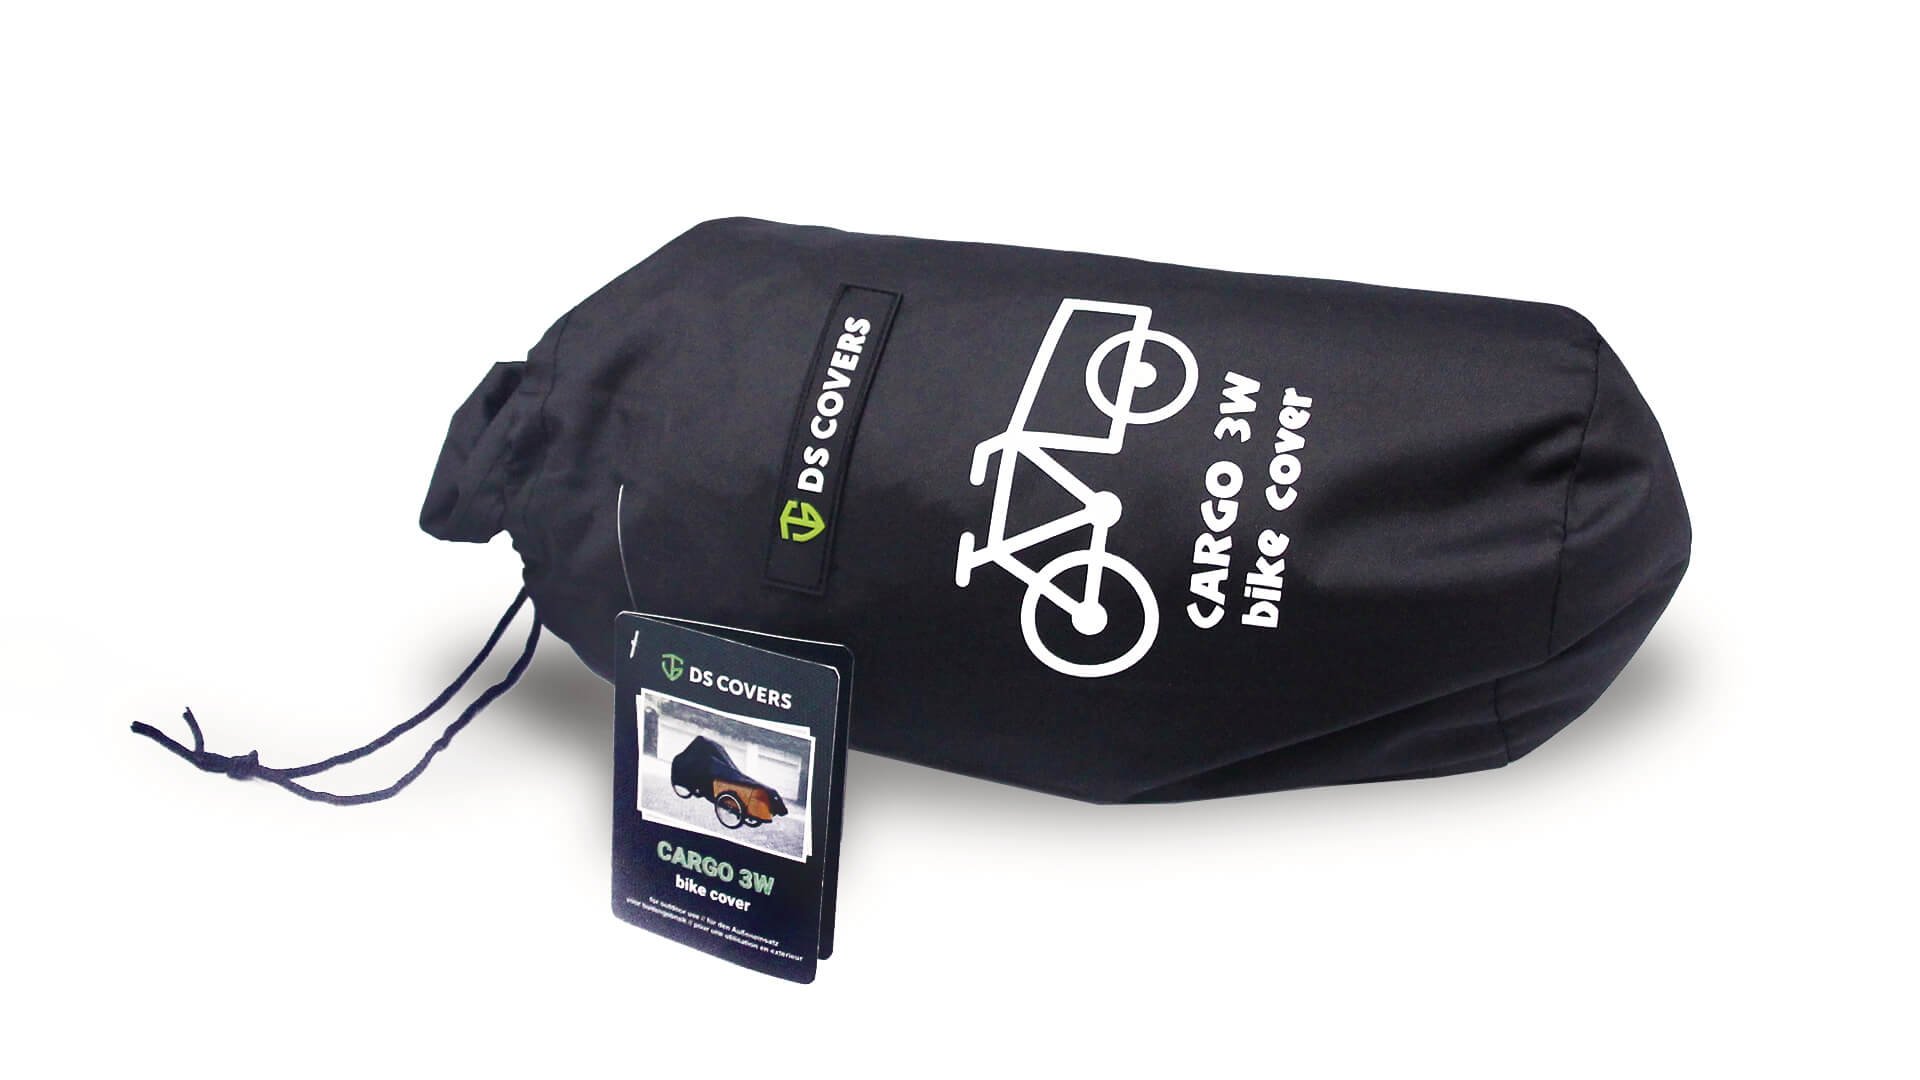 Partez en vacances avec les housses de transport vélo DS Covers !